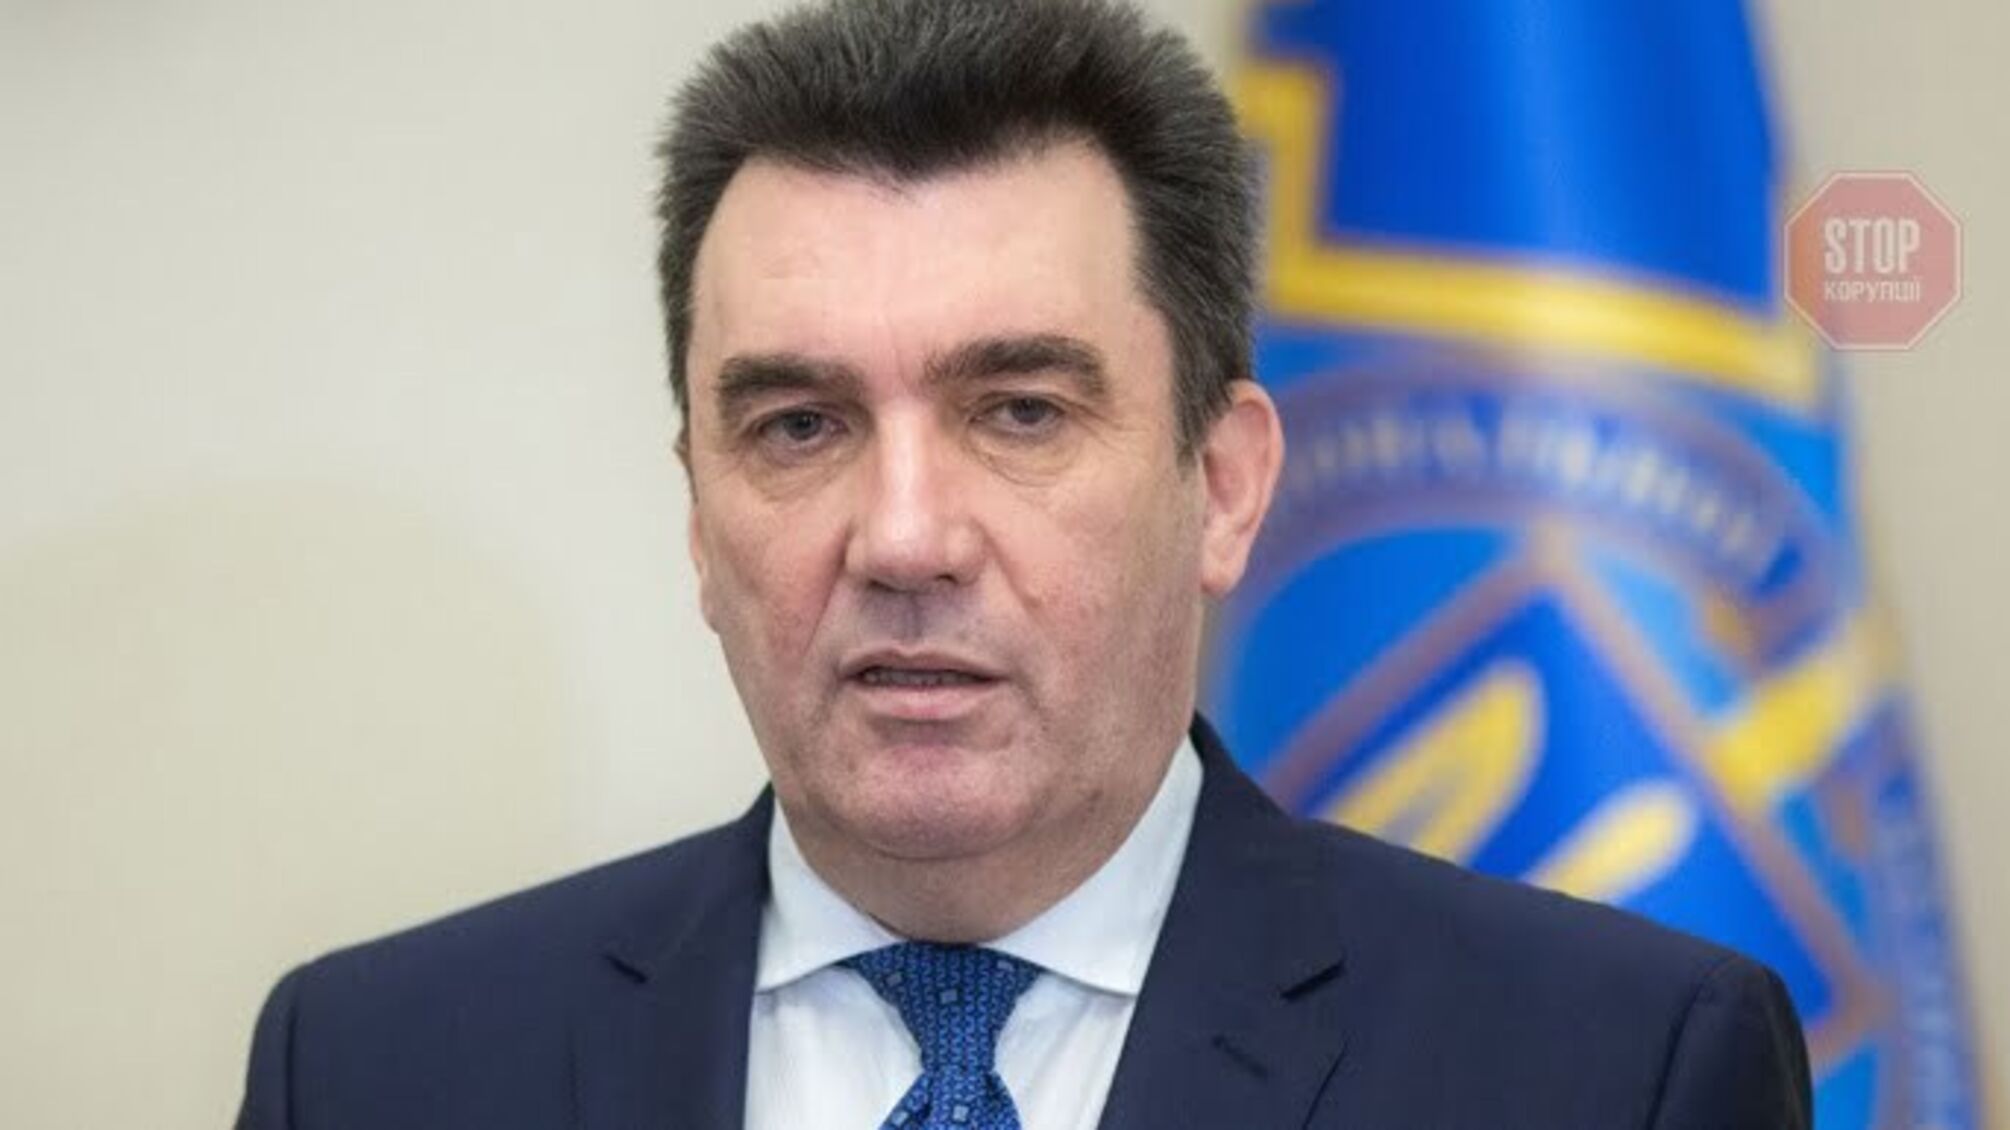 Секретарь СНБО: Английский должен стать вторым языком в Украине